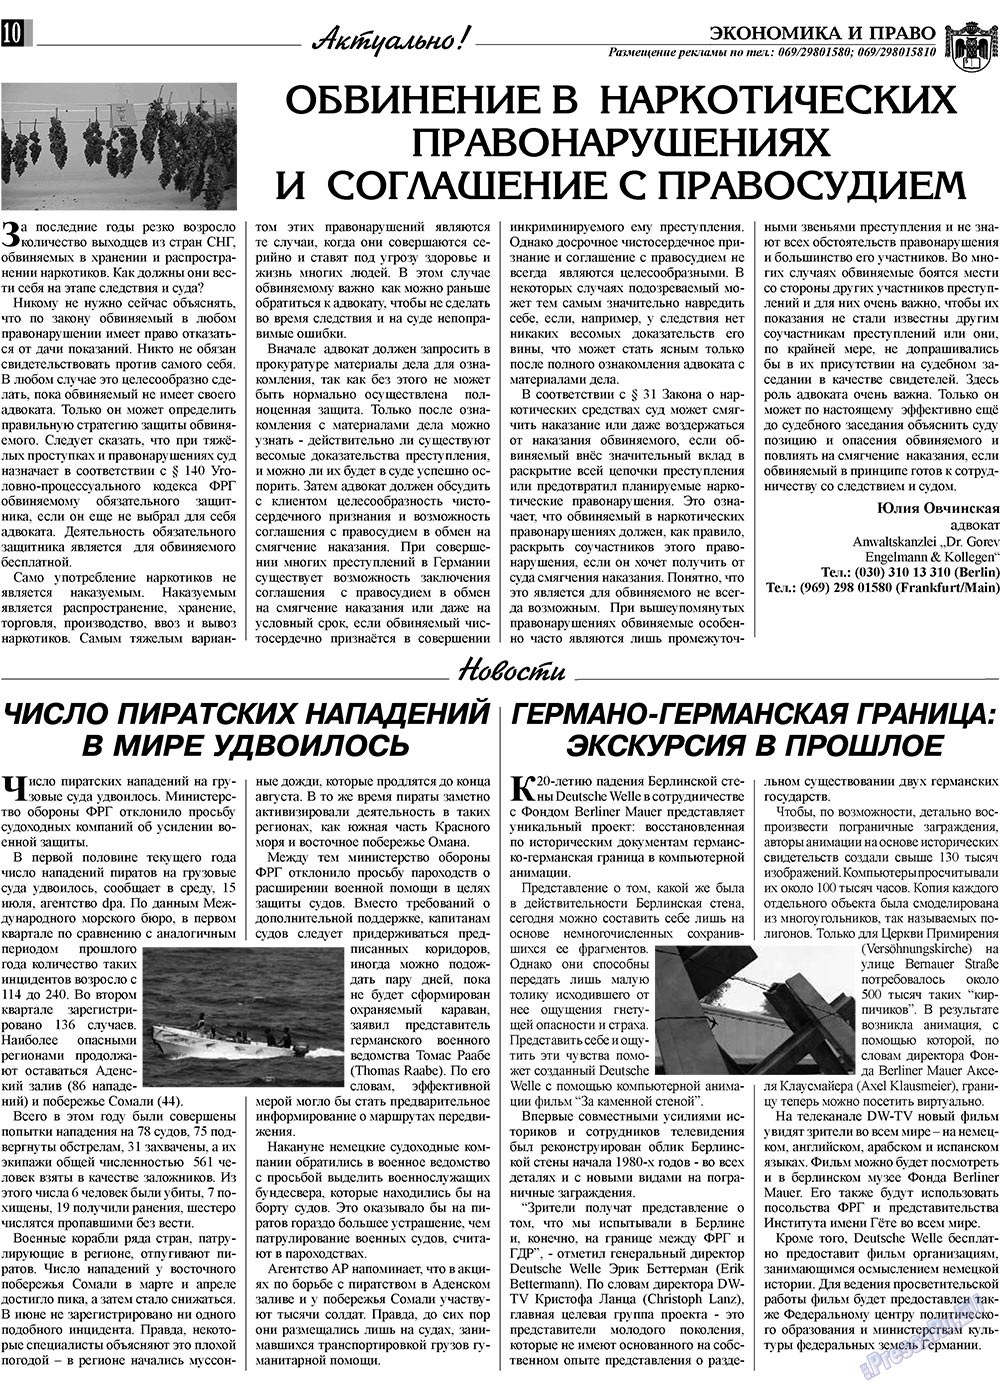 Экономика и право, газета. 2009 №8 стр.10